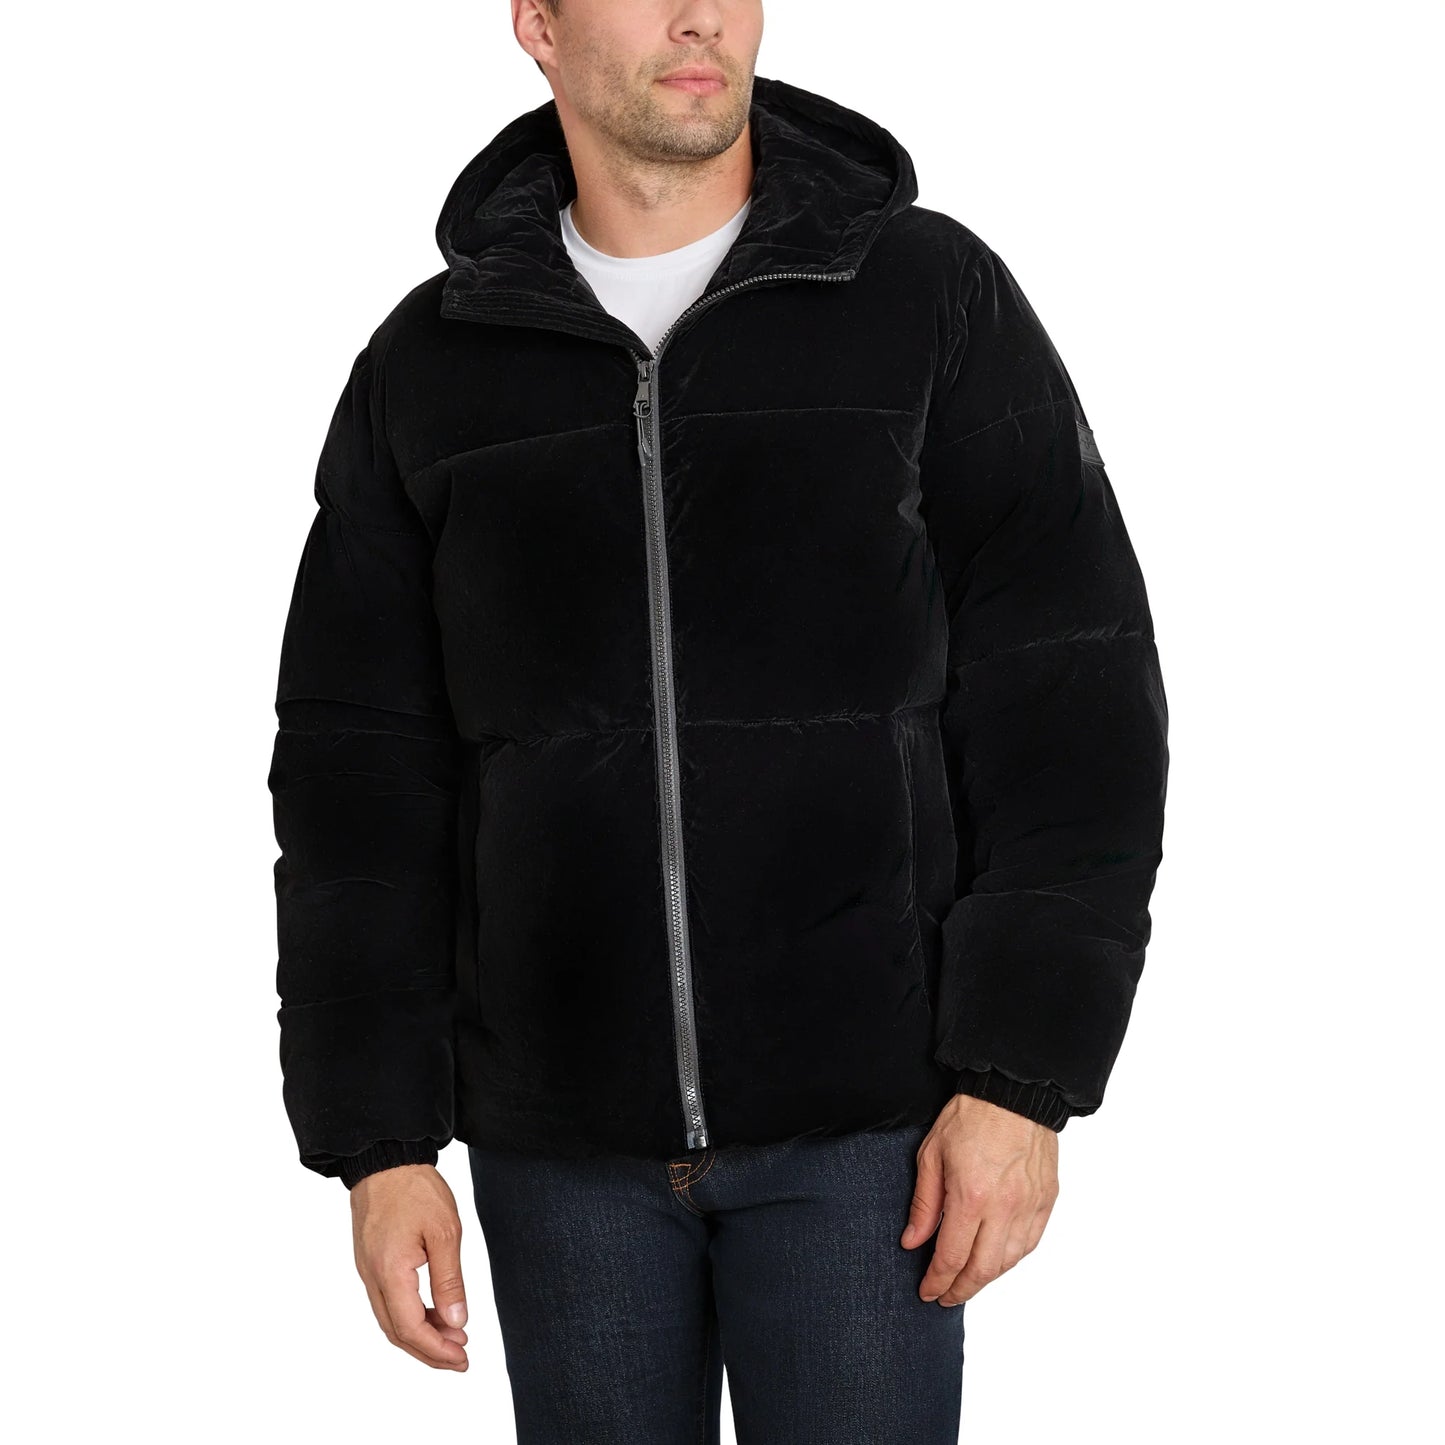 Sean John Men's Velvet Hooded Puffer Jacket - Black (Large) (SJ2189)